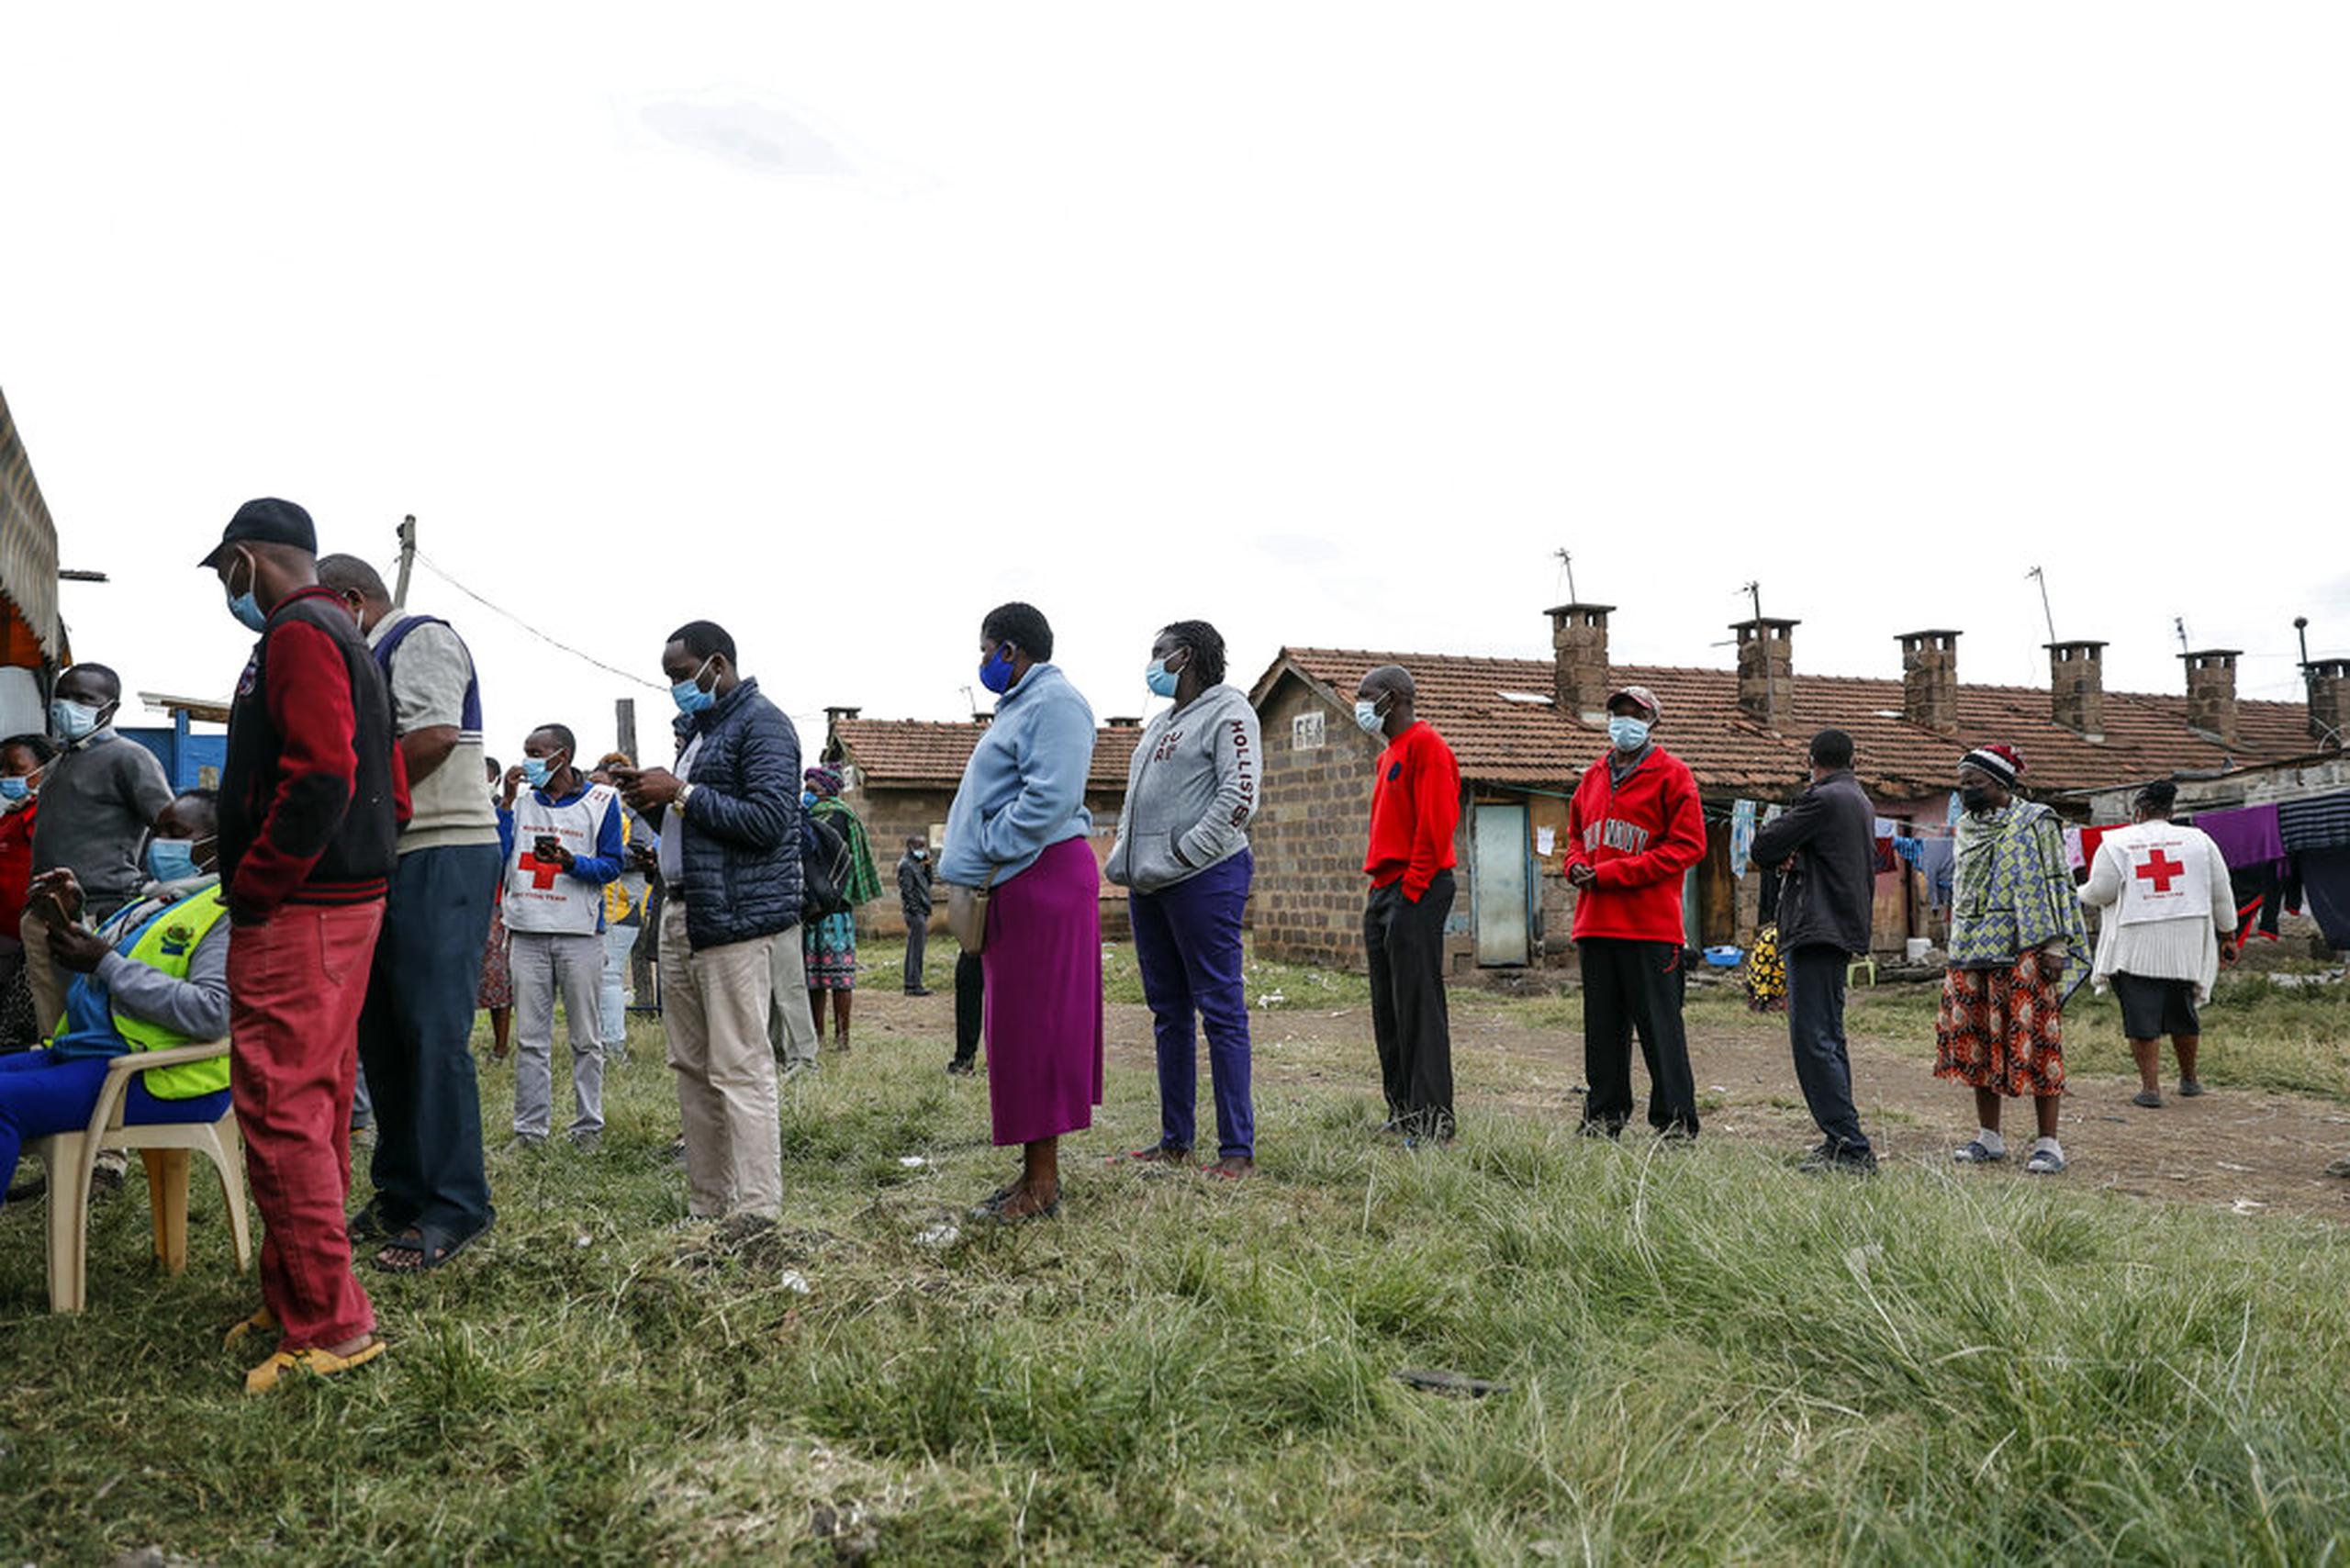 Kenianos hacen fila para recibir la vacuna contra el COVID-19 de AstraZeneca en Nairobi, Kenia, el 14 de agosto de 2021.